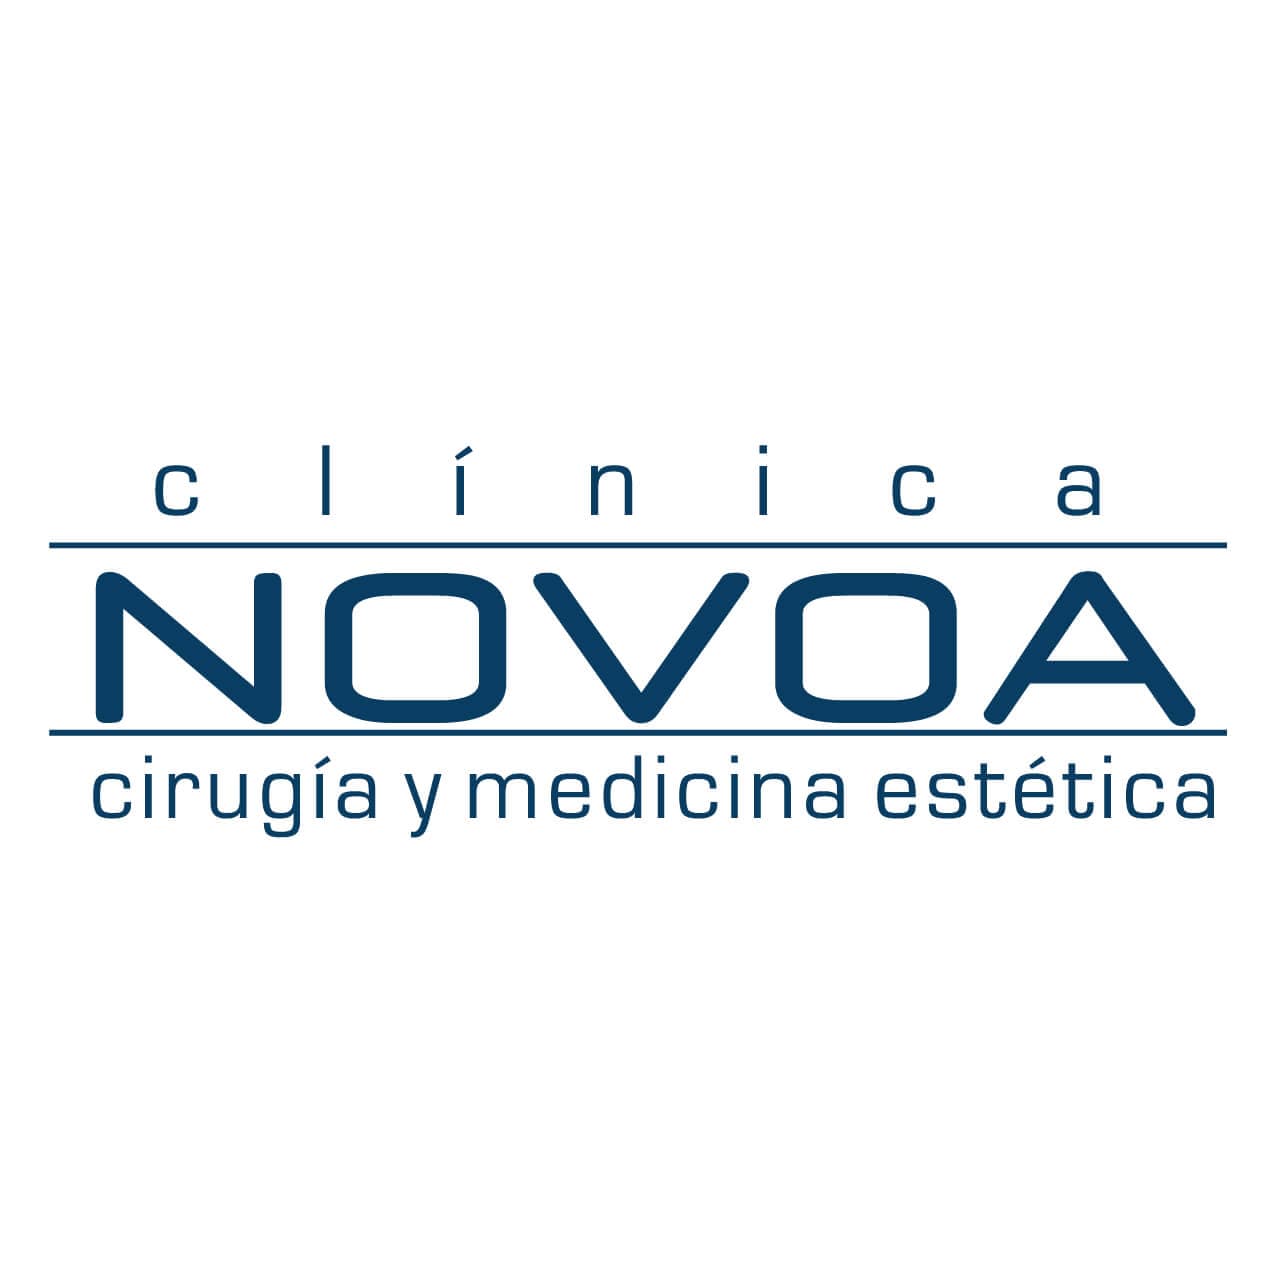 (c) Clinicanovoa.es